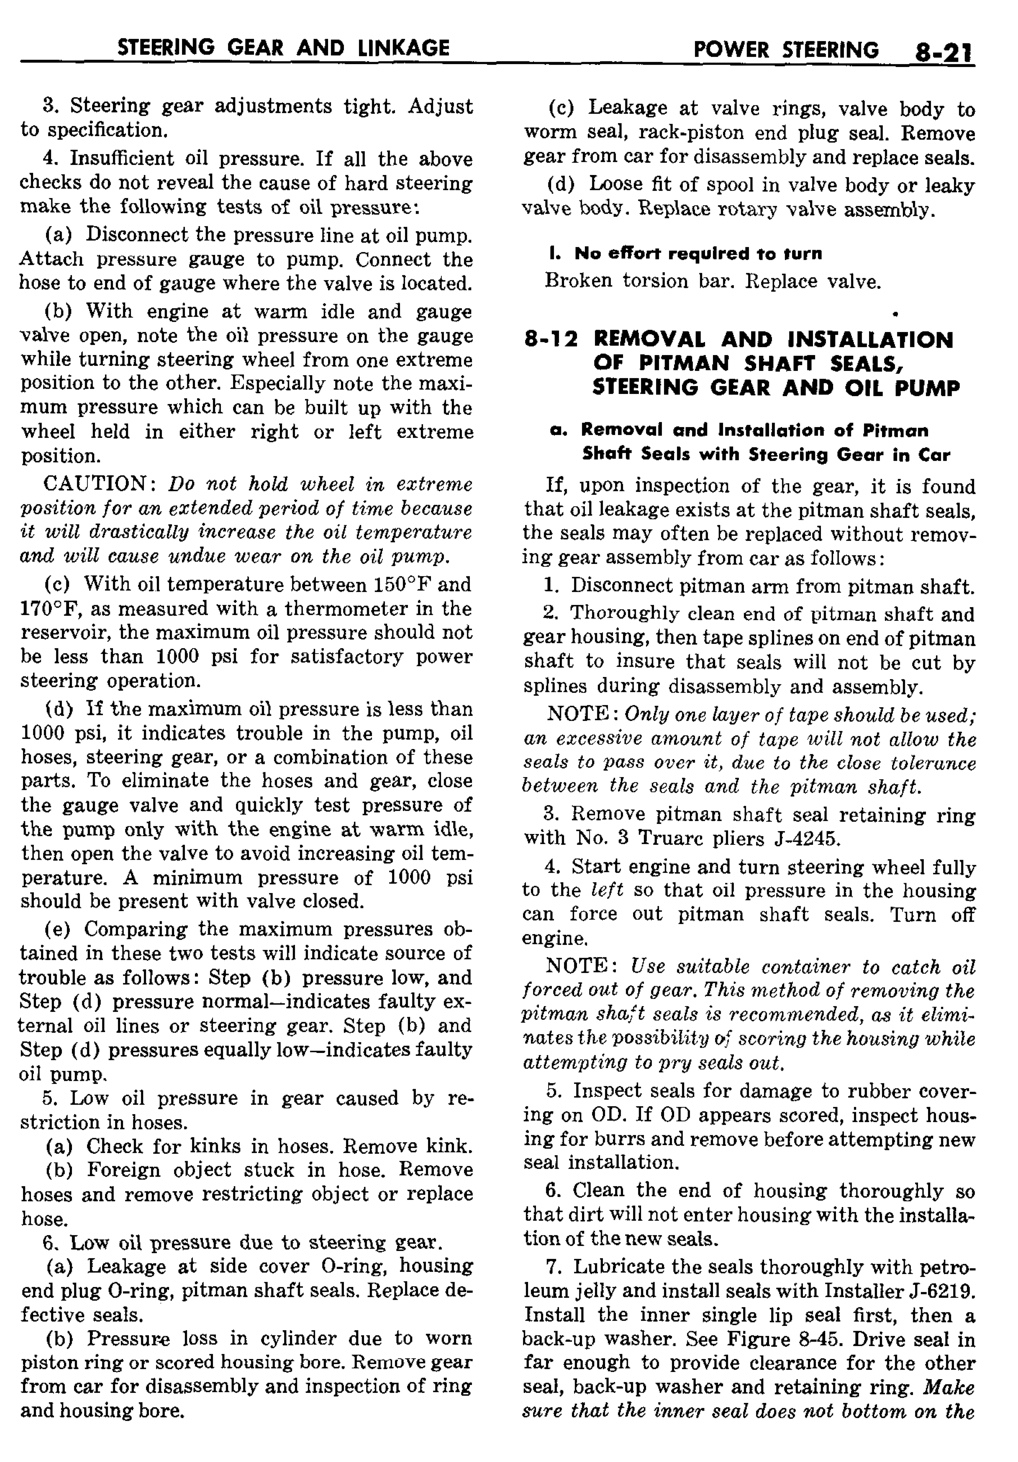 n_09 1959 Buick Shop Manual - Steering-021-021.jpg